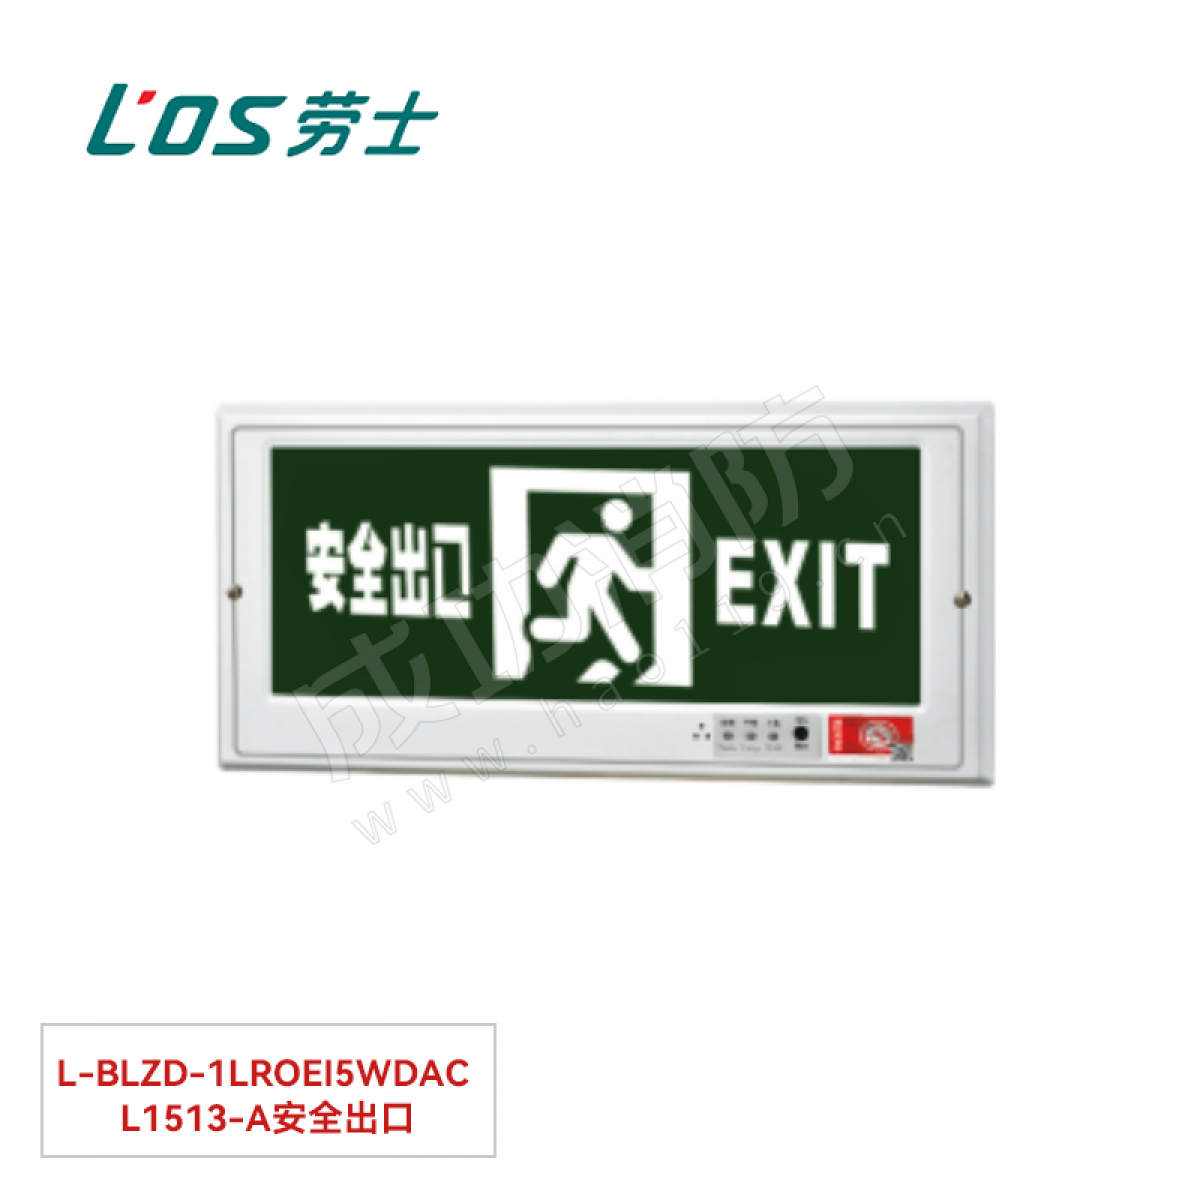 劳士 消防应急标志灯(嵌墙安装) L-BLZD-1LROEⅠ5WDAC L1513-A安全出口